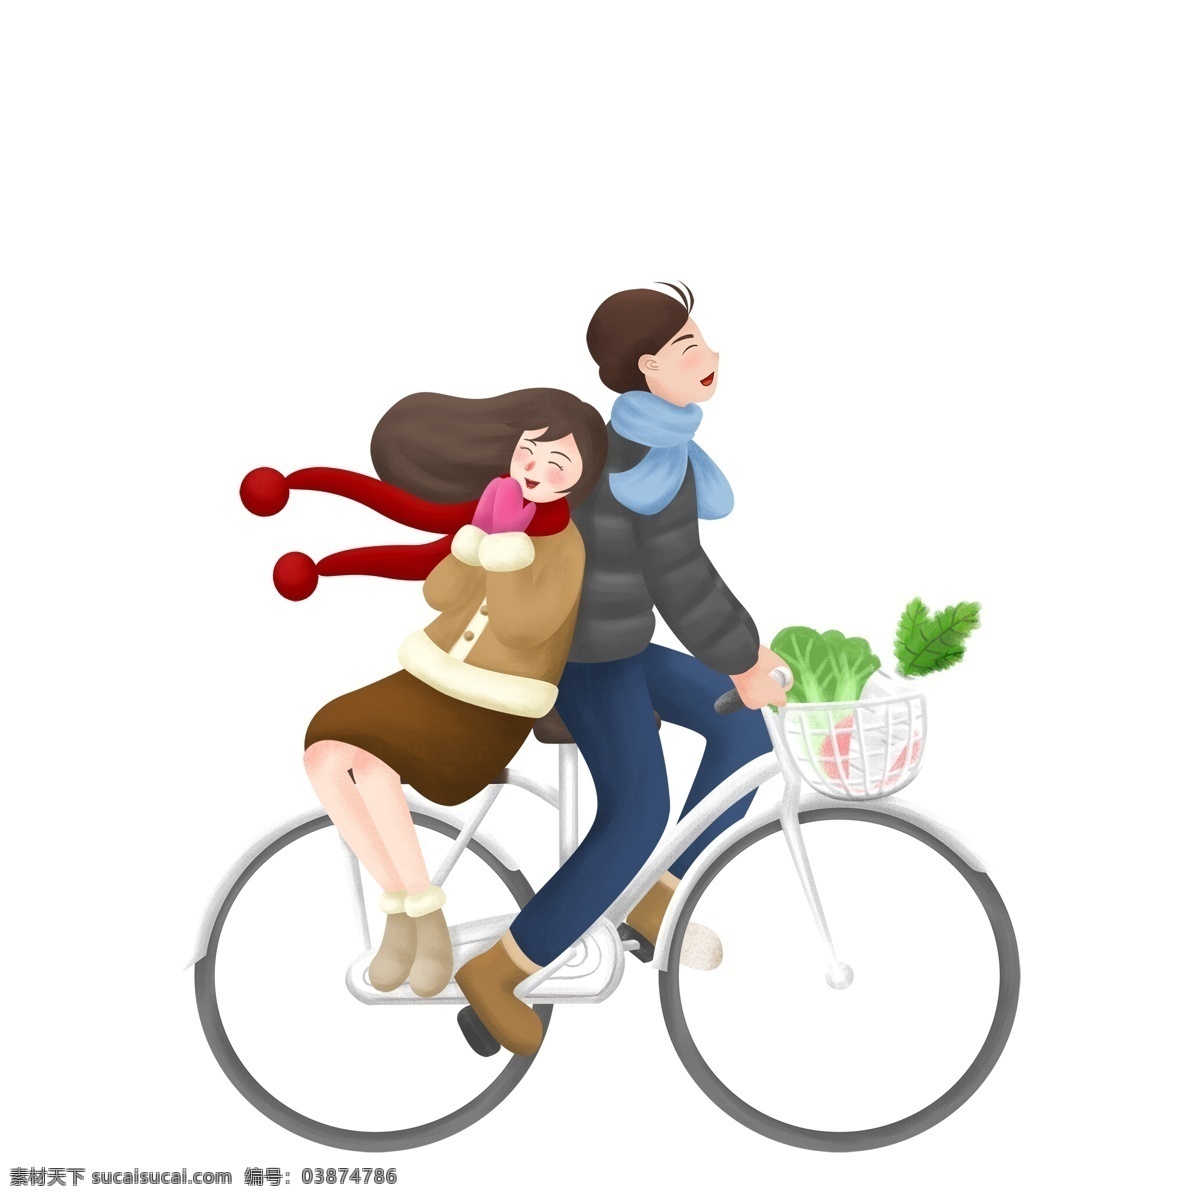 浪漫 骑 自行车 小 情侣 人物 卡通 手绘 夫妻 骑自行车 小清新 插画